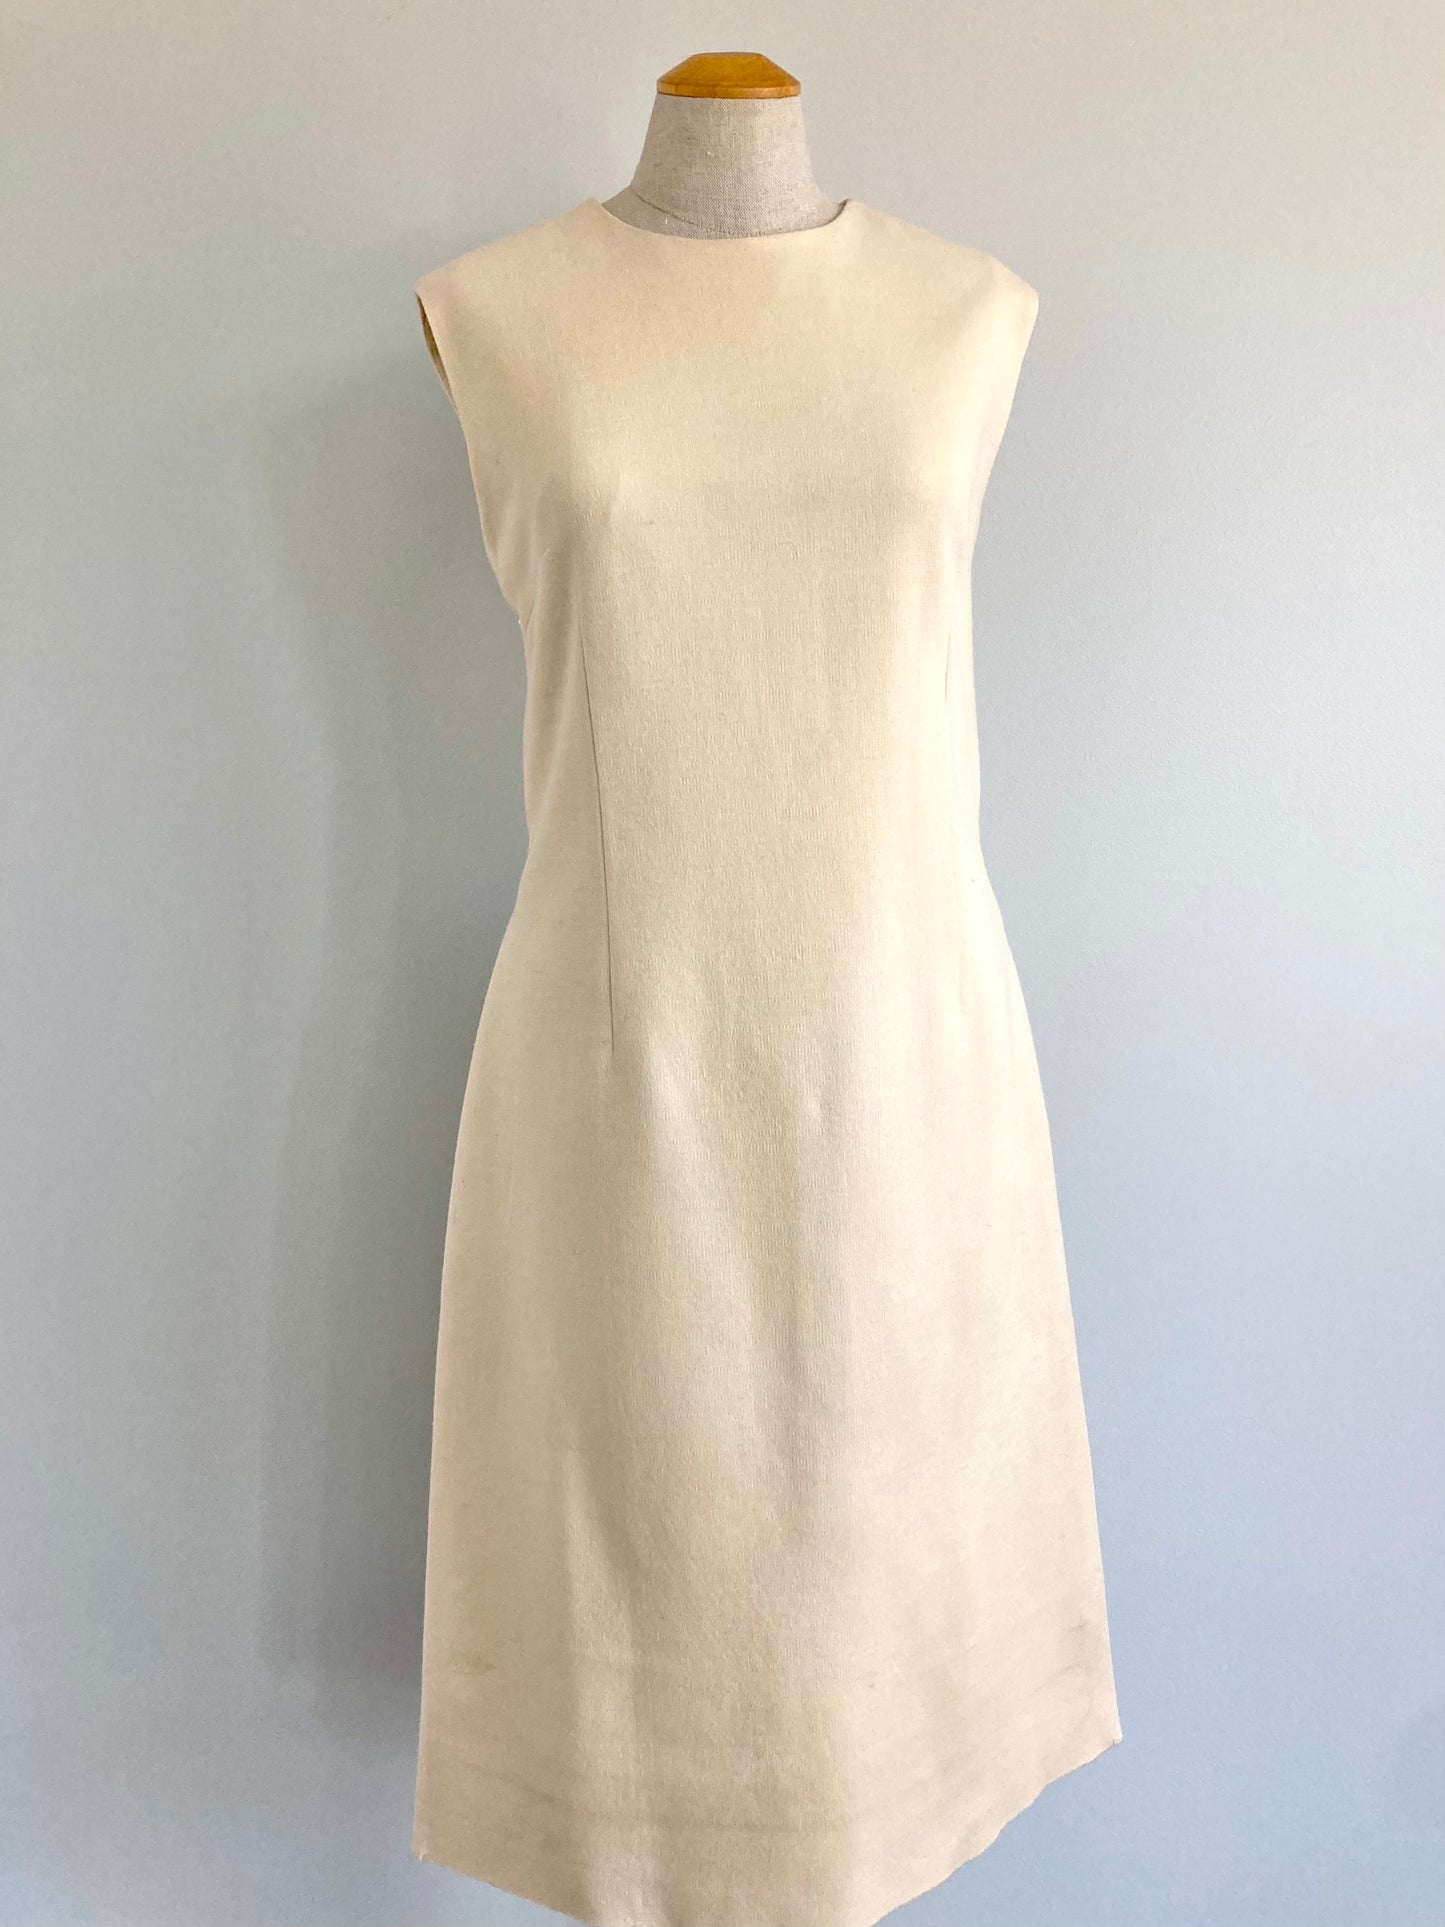 1960s Lilli Ann Dress Suit, Size M/L